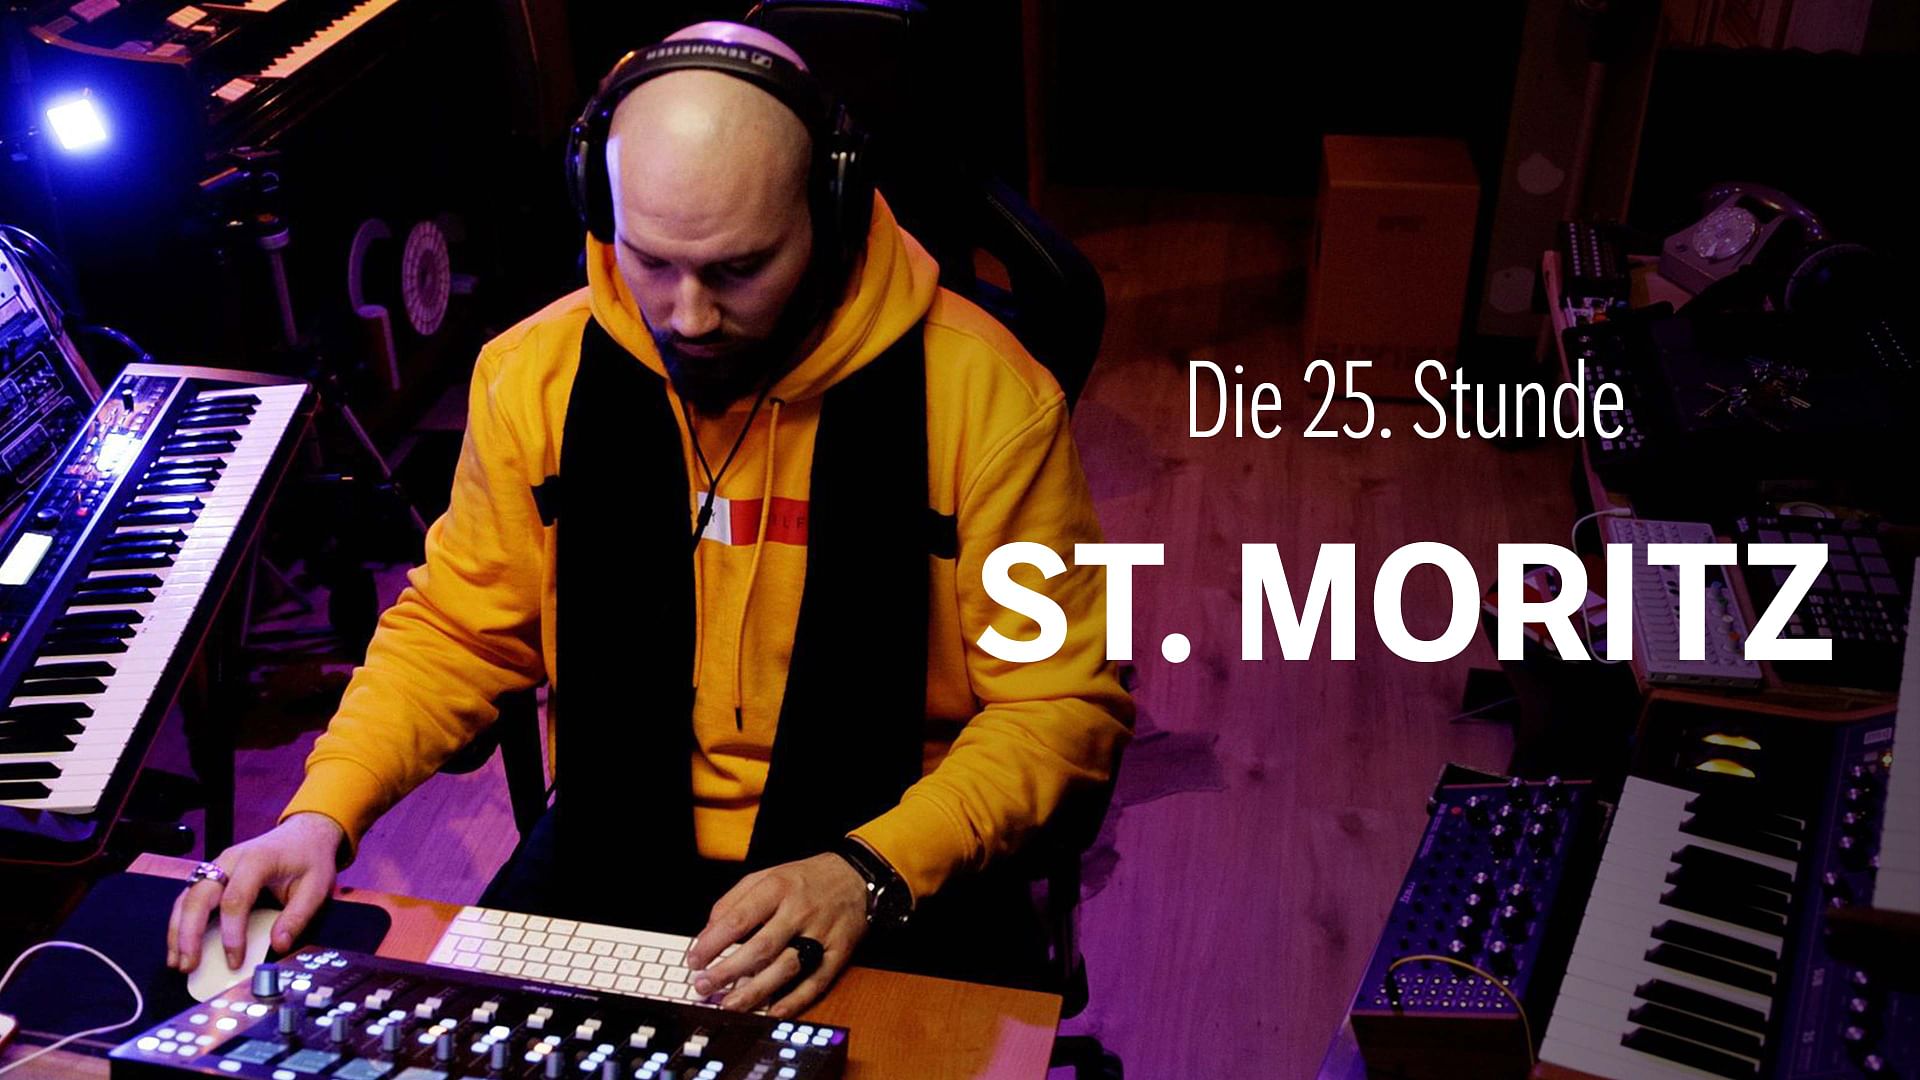 Die 25. Stunde - St. Moritz